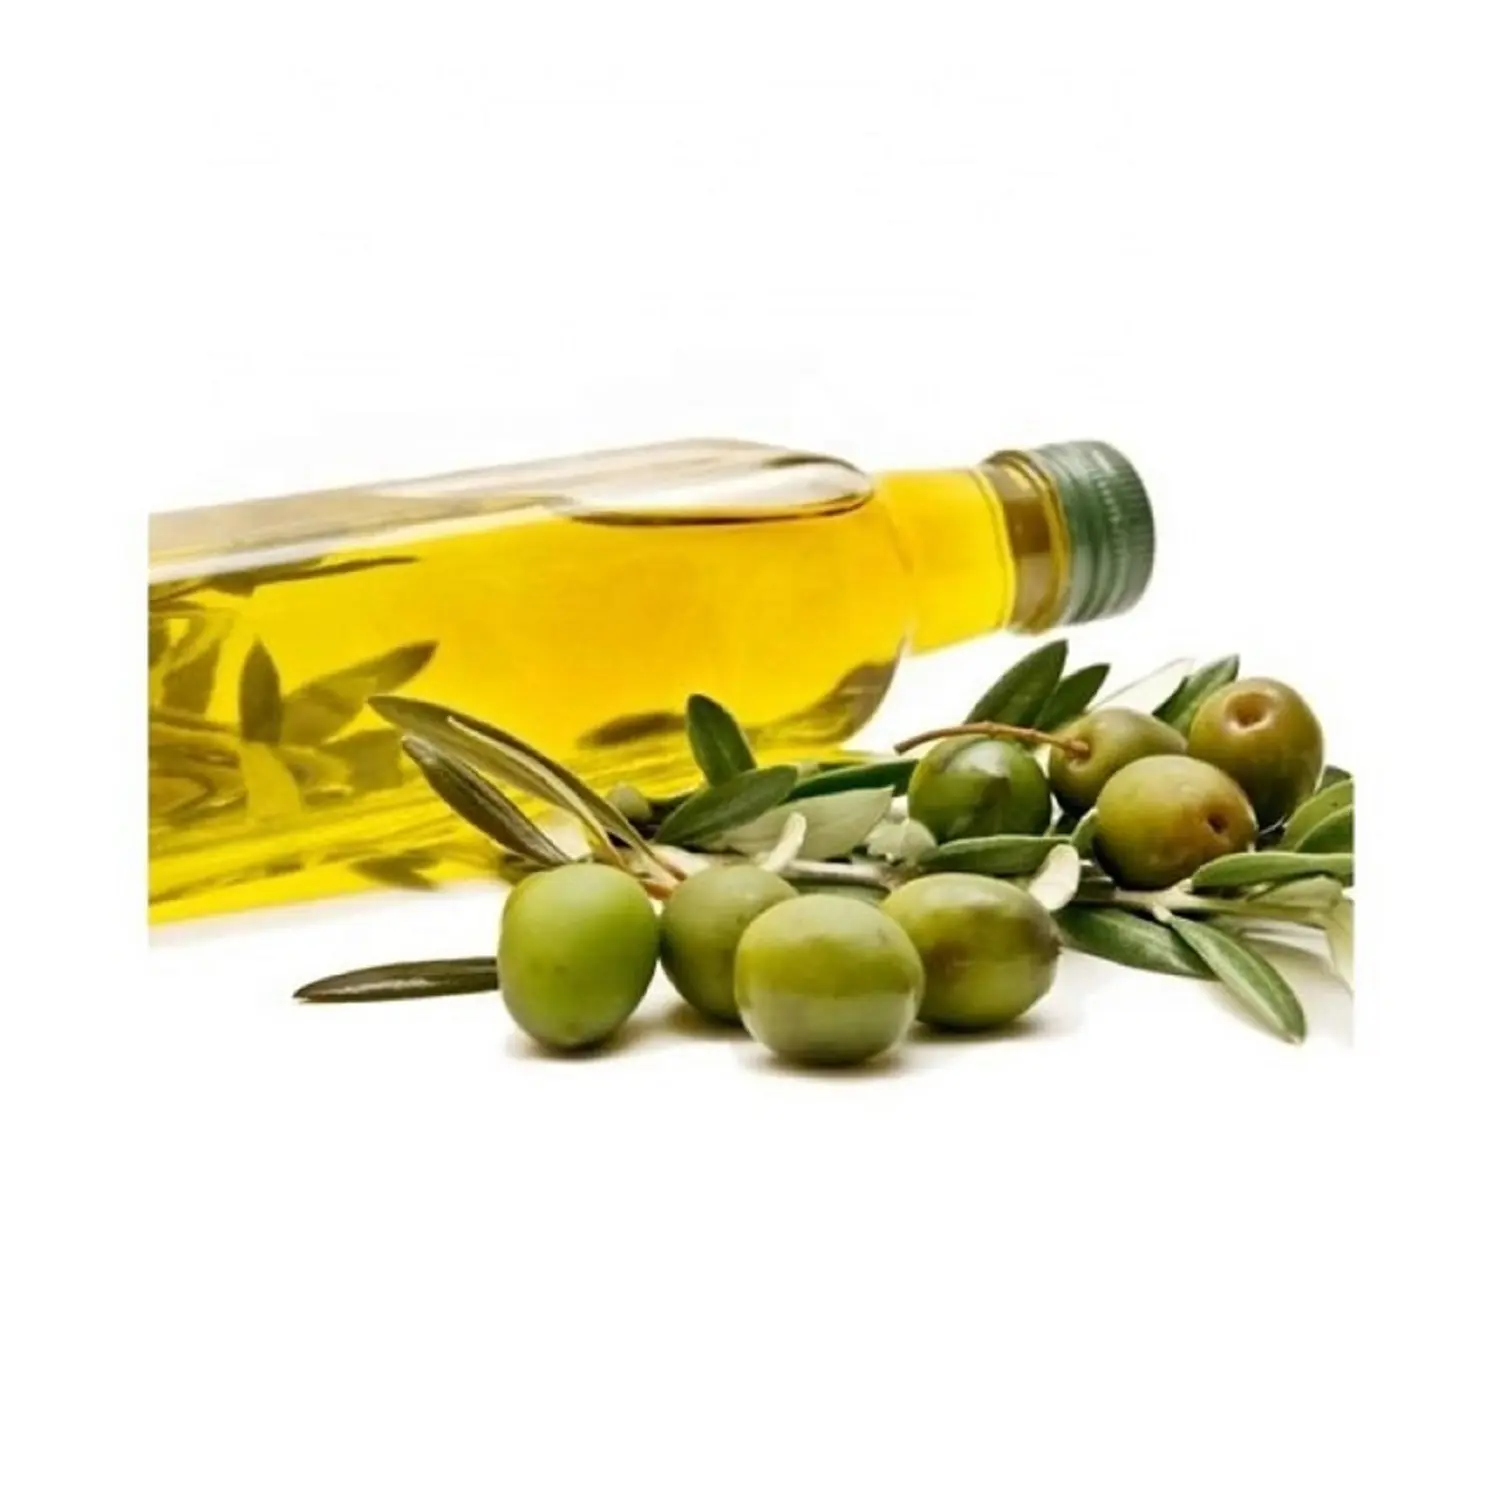 Лучшая цена, 100% оливковое масло для приготовления пищи оптом